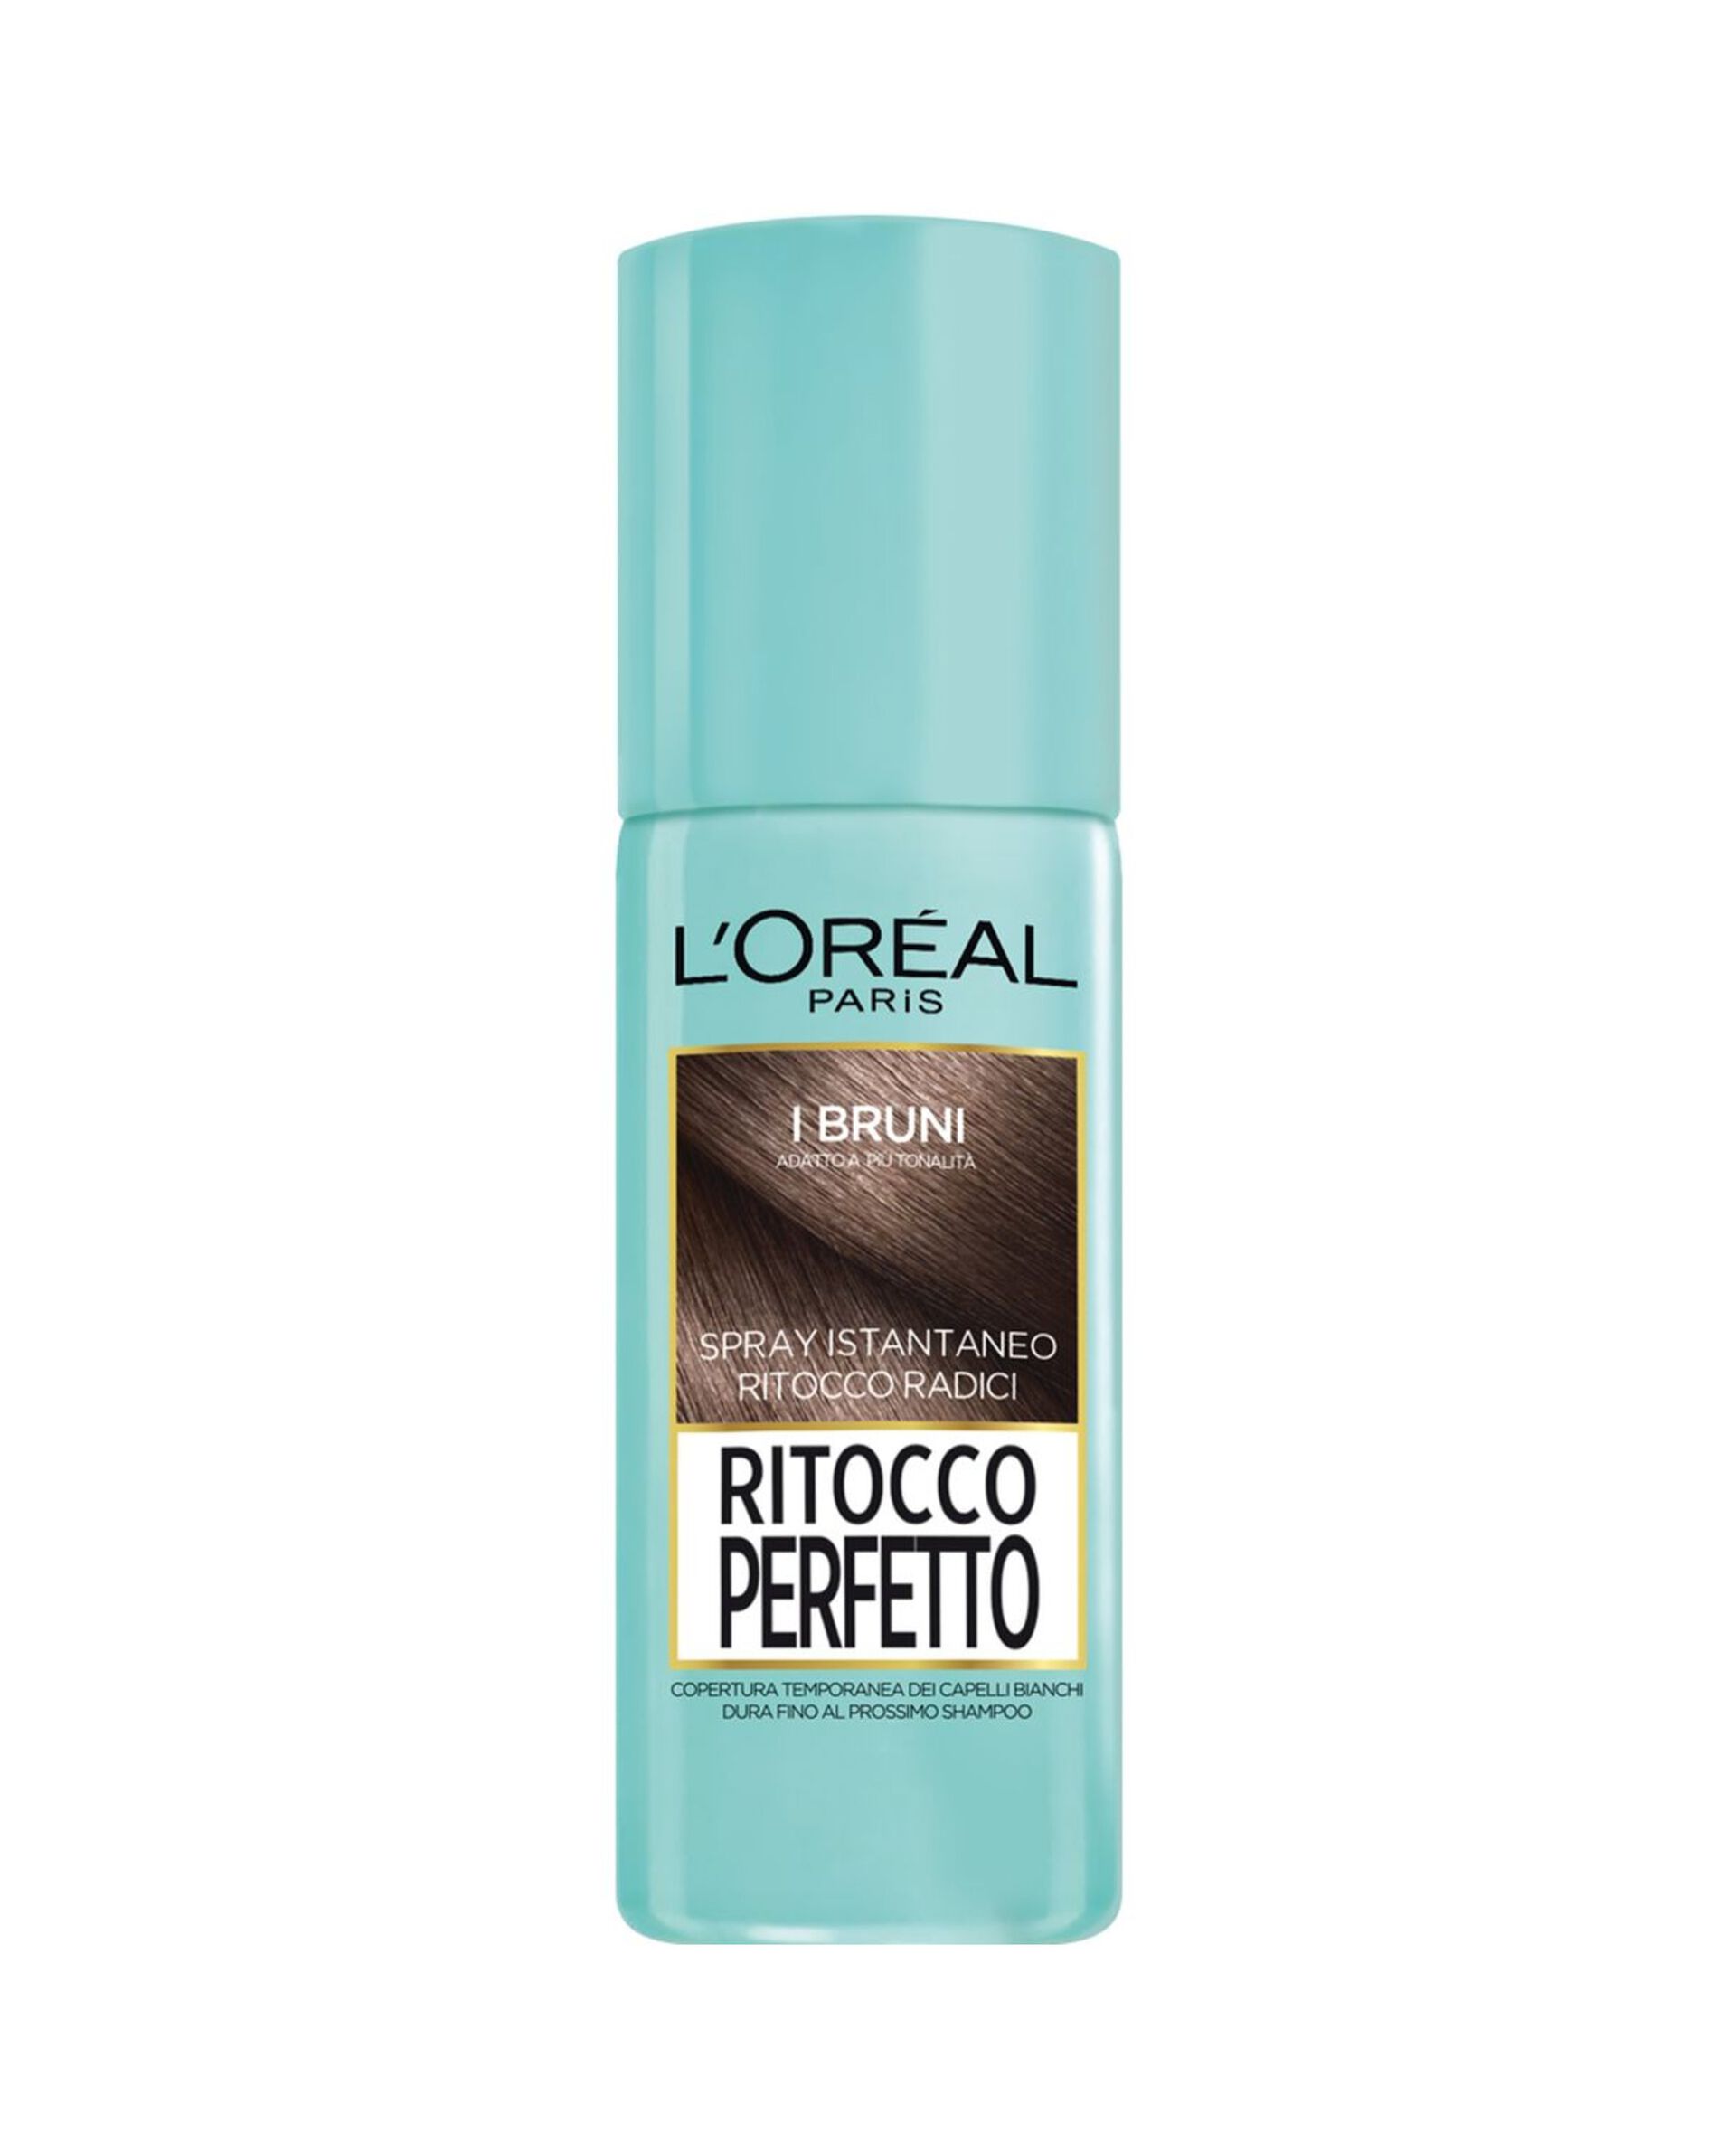 L'Oréal Paris Ritocco Perfetto, Spray Istantaneo Correttore per Radici e Capelli Bianchi, Colore: Bruno, 75 ml.